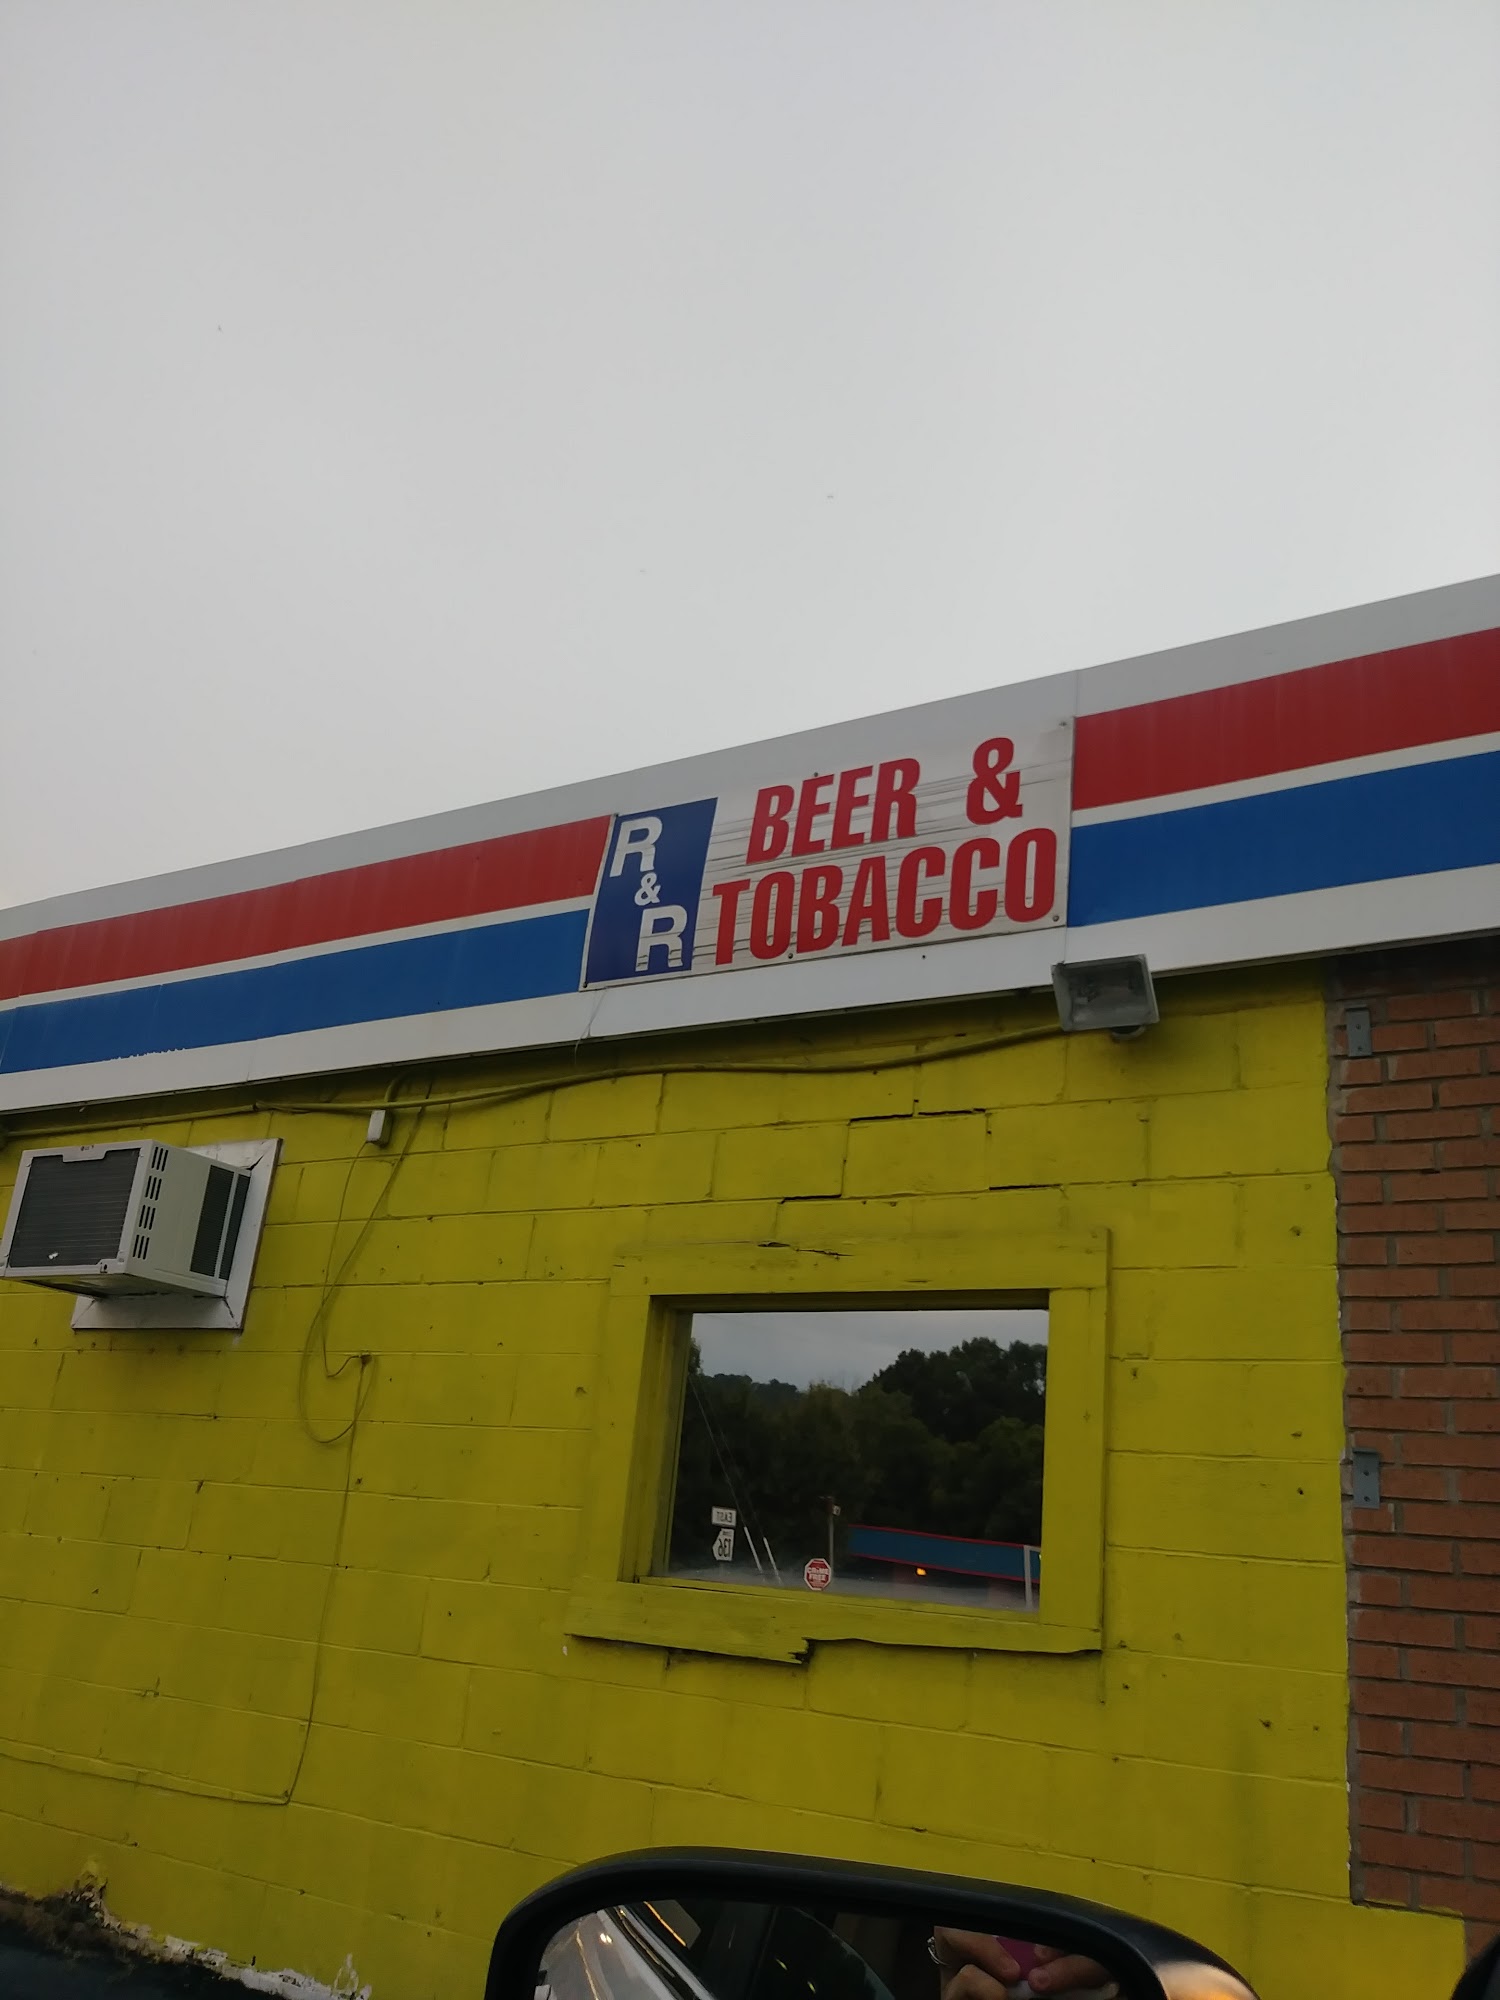 R & R Beer & Tobacco